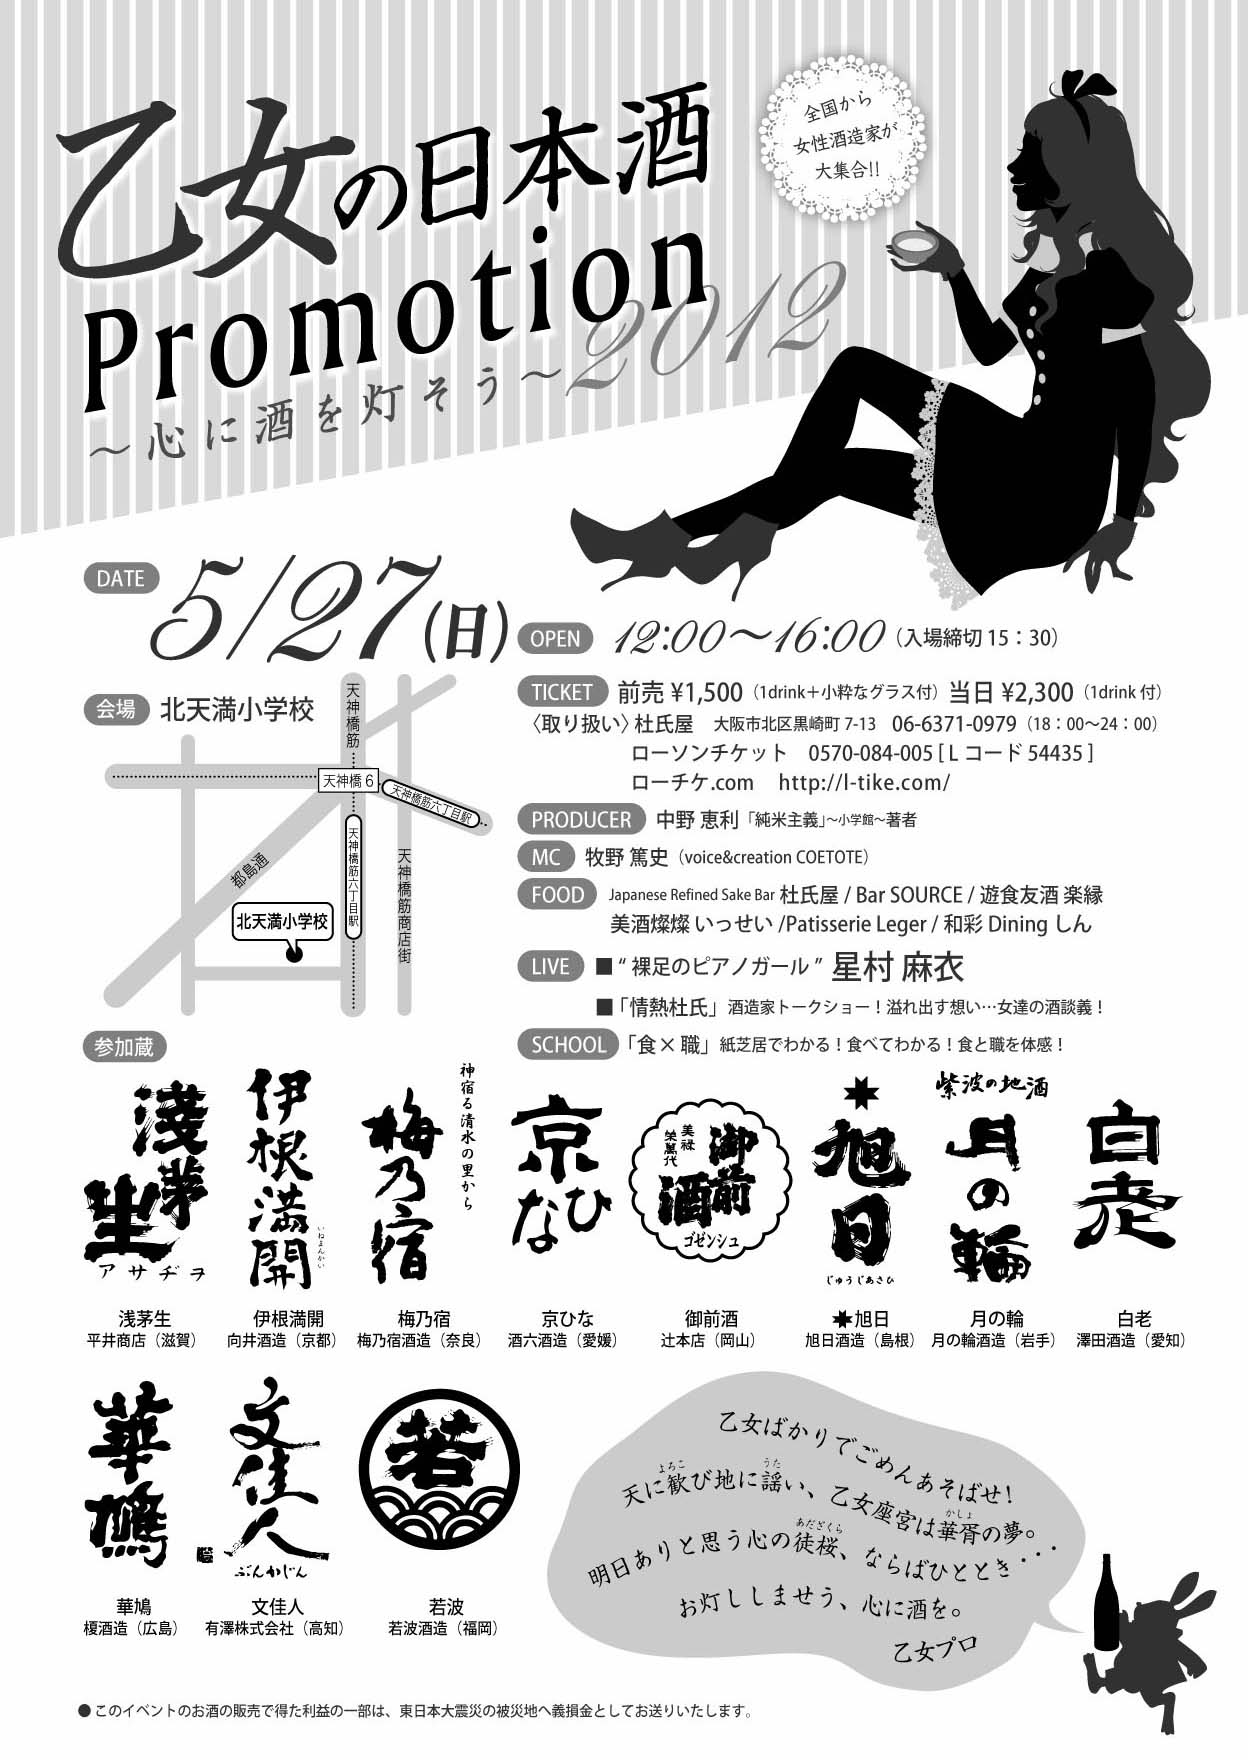 乙女の日本酒Promotion 2012_c0008119_21312849.jpg